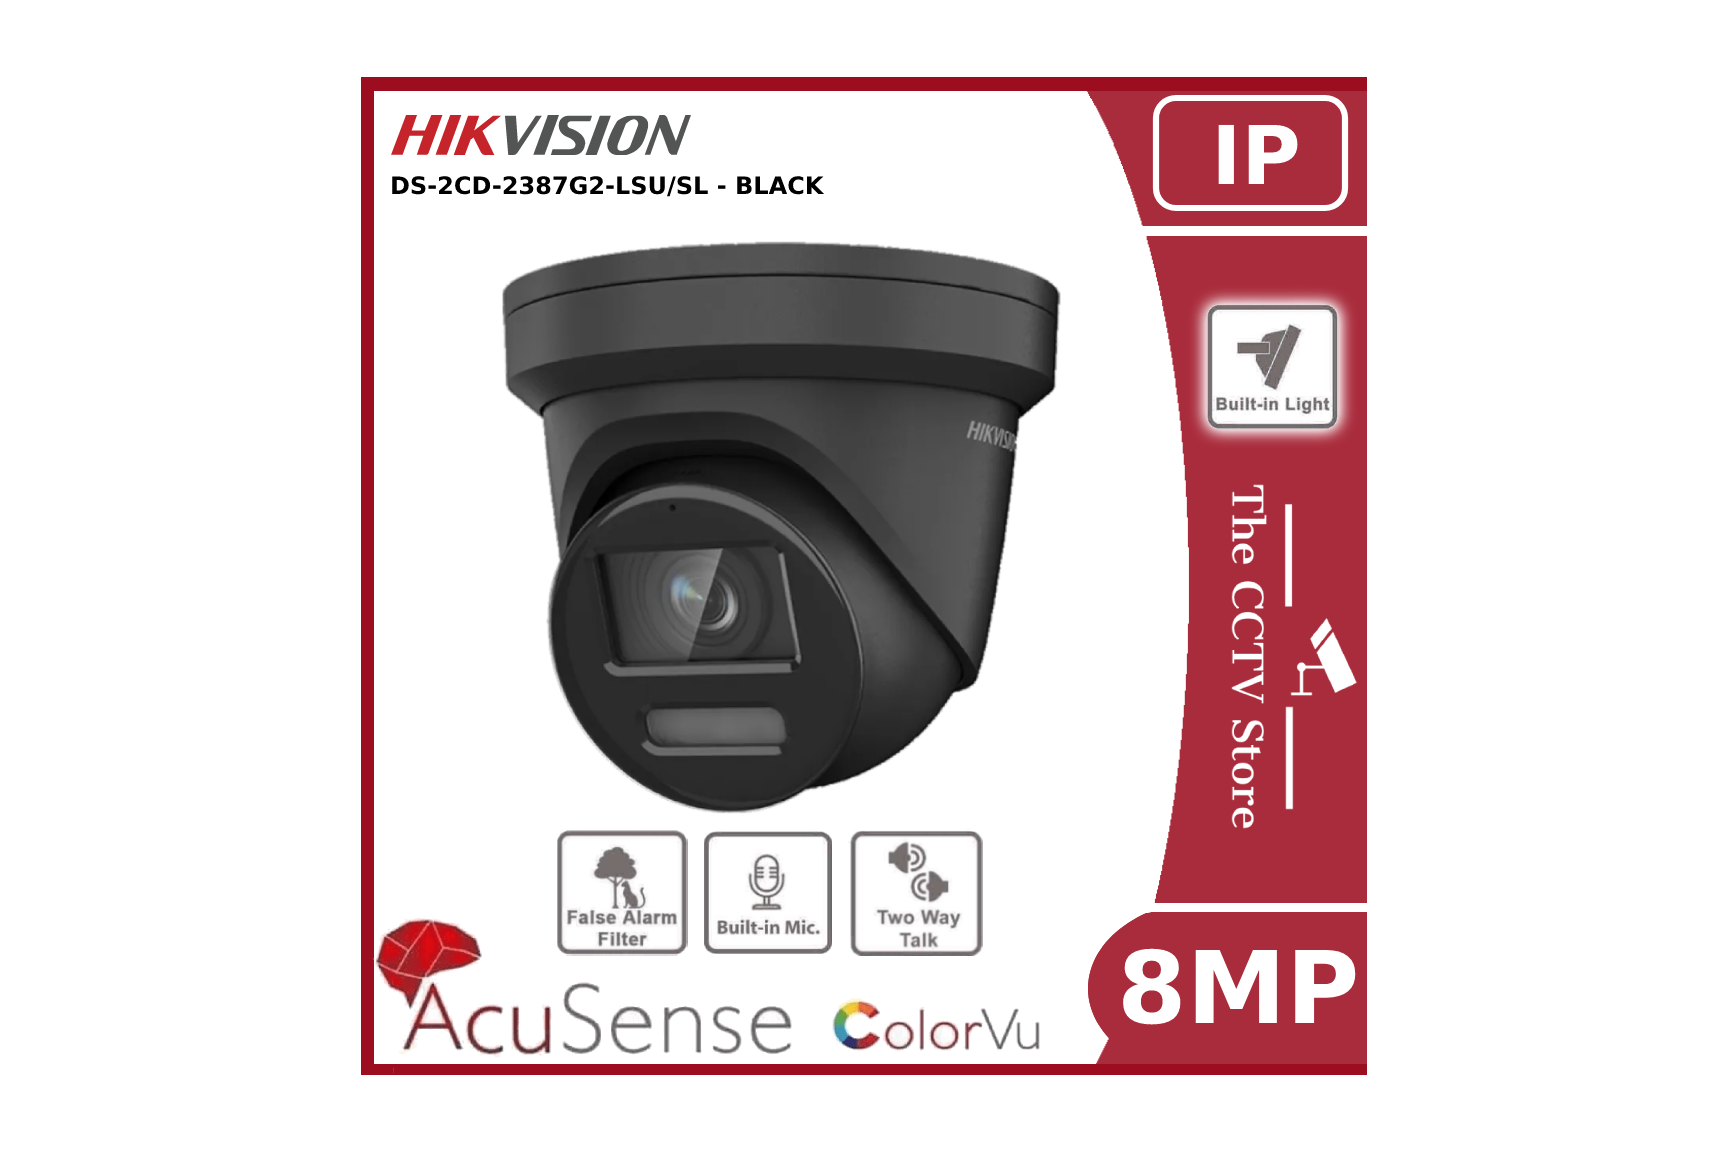 Hikvision Hikvision DS-2CD2387G2-LSU/SL 4K 8MP ColorVu IP CCTV Camera PoE 2 Way Talk 